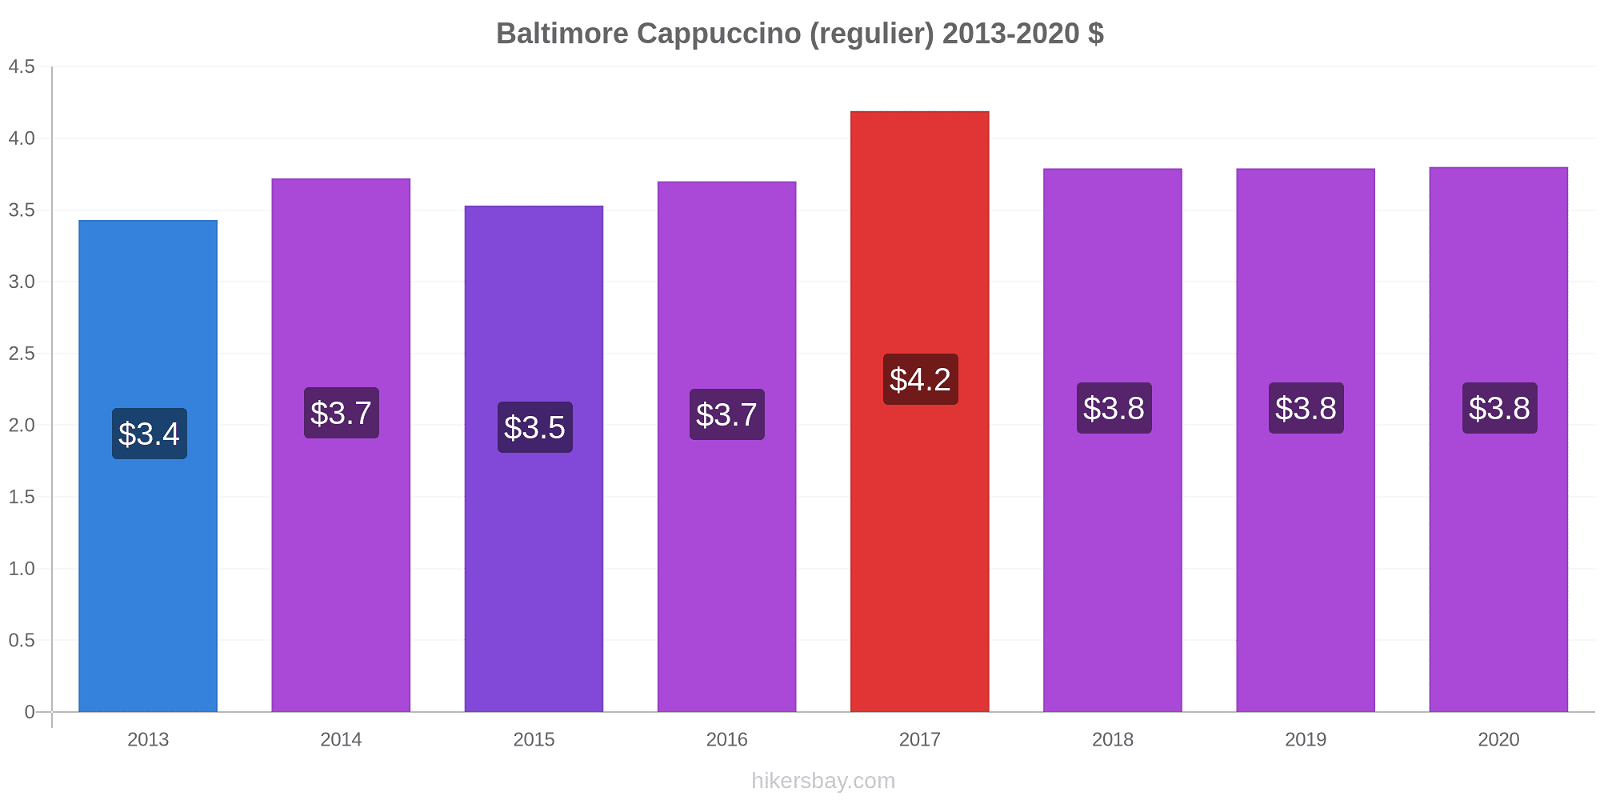 Baltimore prijswijzigingen Cappuccino (regelmatige) hikersbay.com